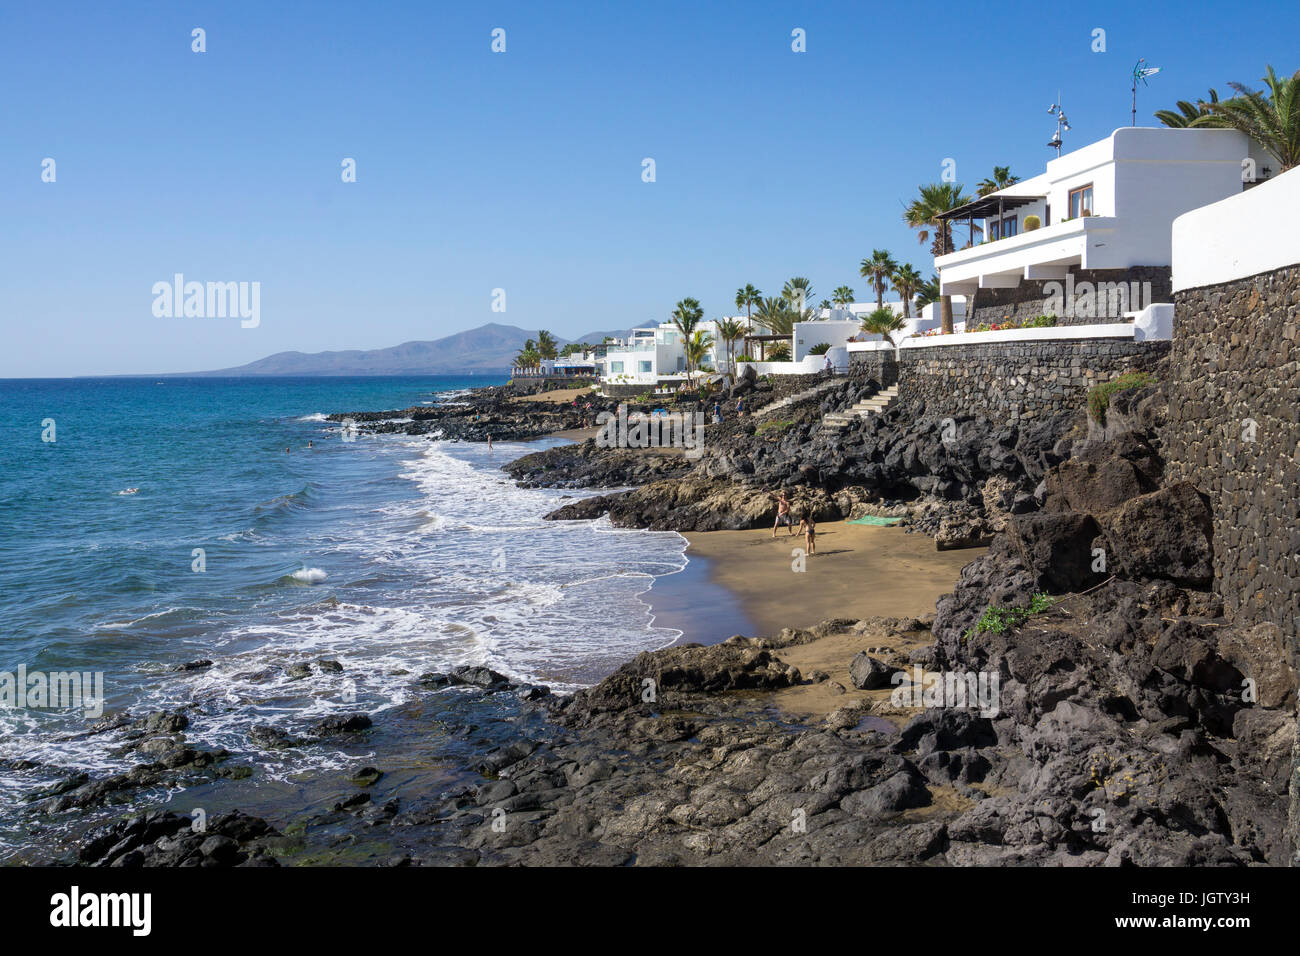 Petites plages entre les rochers de lave et ci-dessous la promenade, Puerto del Carmen, Lanzarote, îles Canaries, Espagne, Europe Banque D'Images